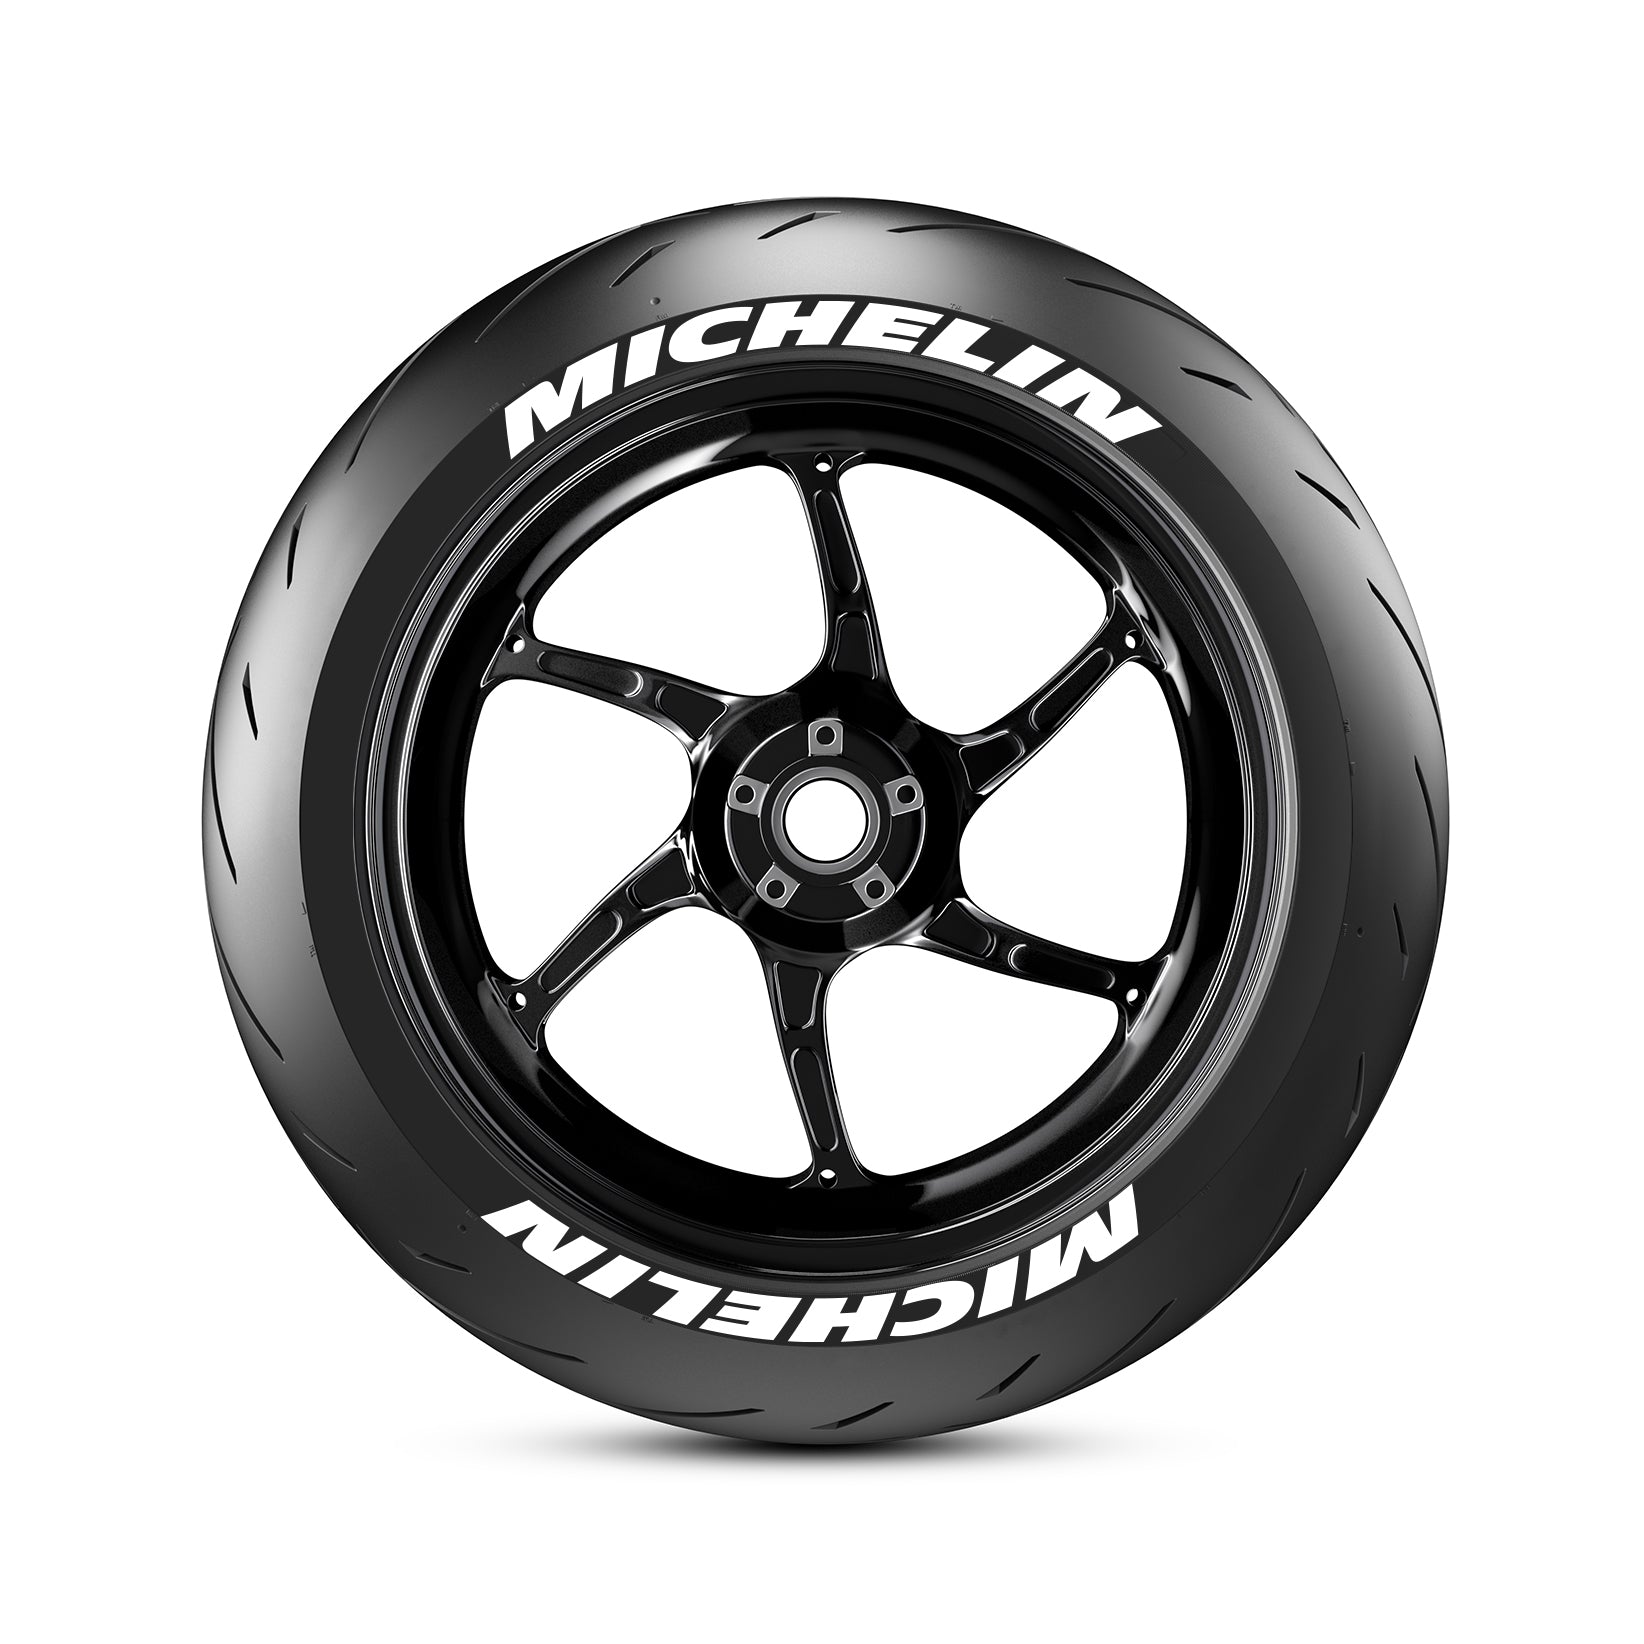 Kit adesivi per pneumatici moto Michelin